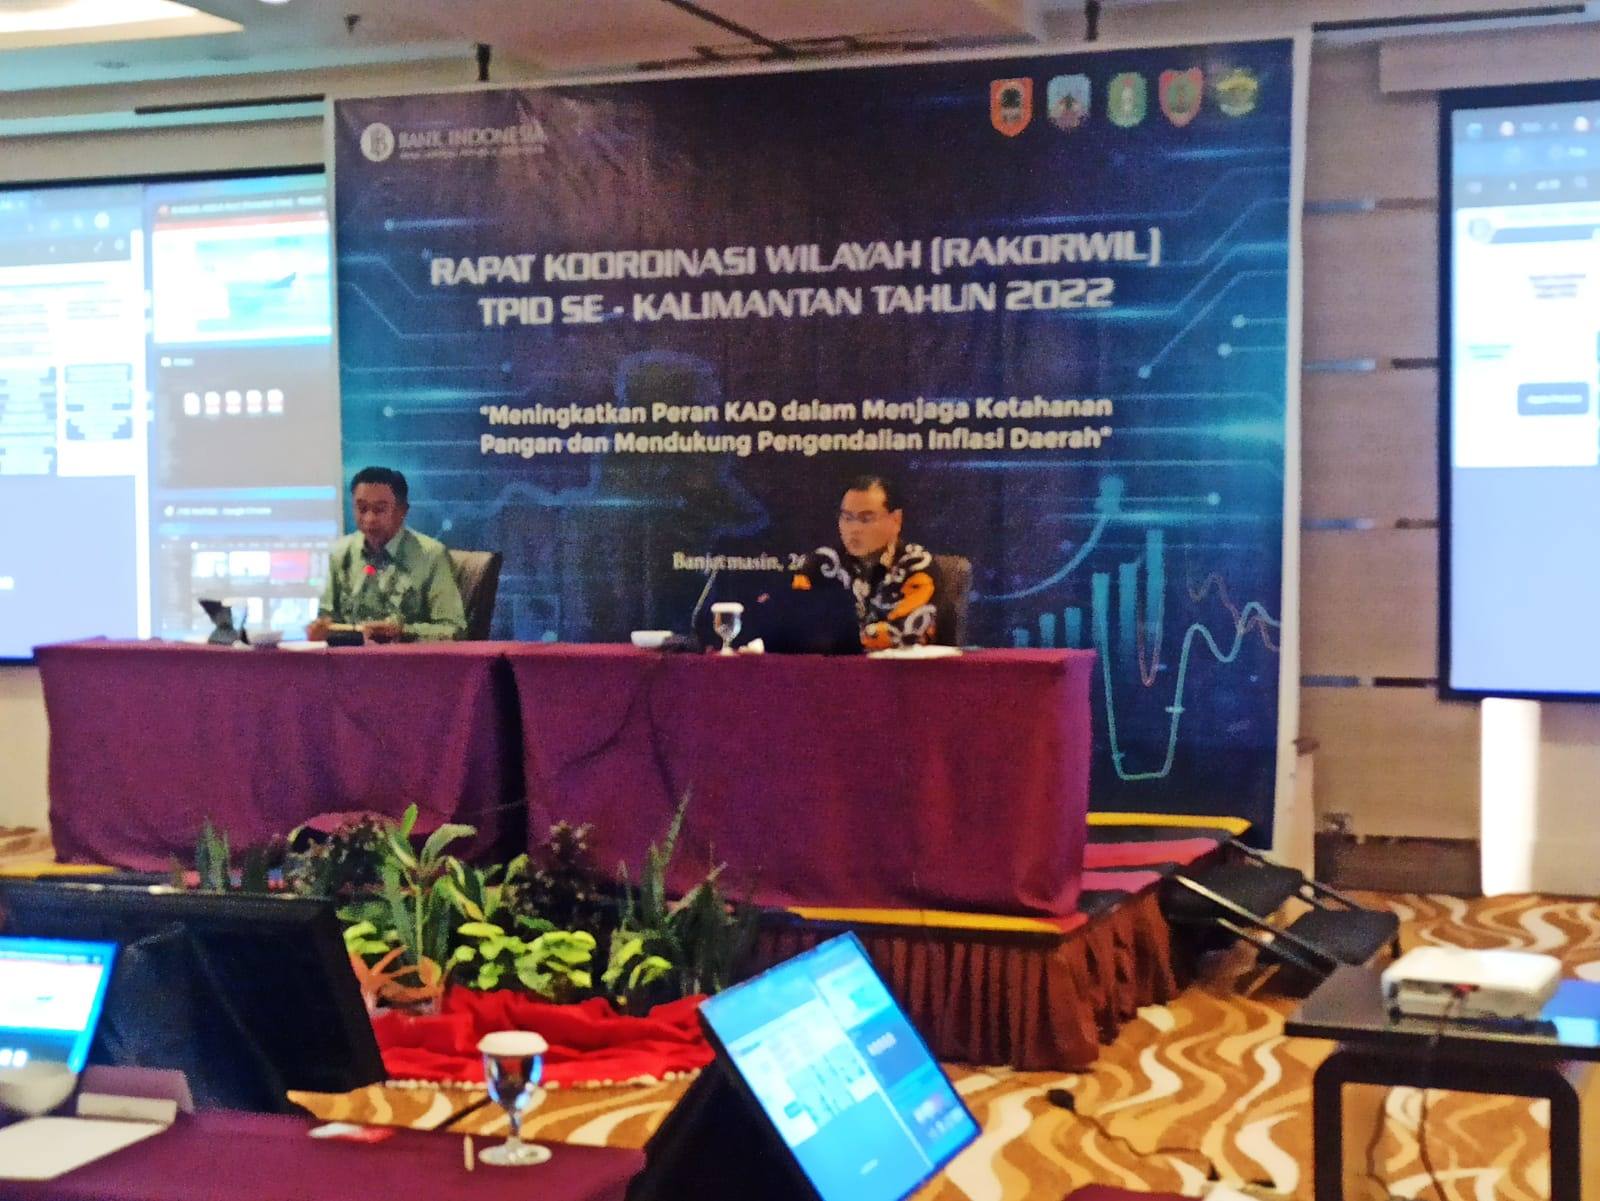 Rakorwil TPID se-Kalimantan, Gelar Operasi Pasar Murah hingga Revitalisasi Lahan Eks Tambang